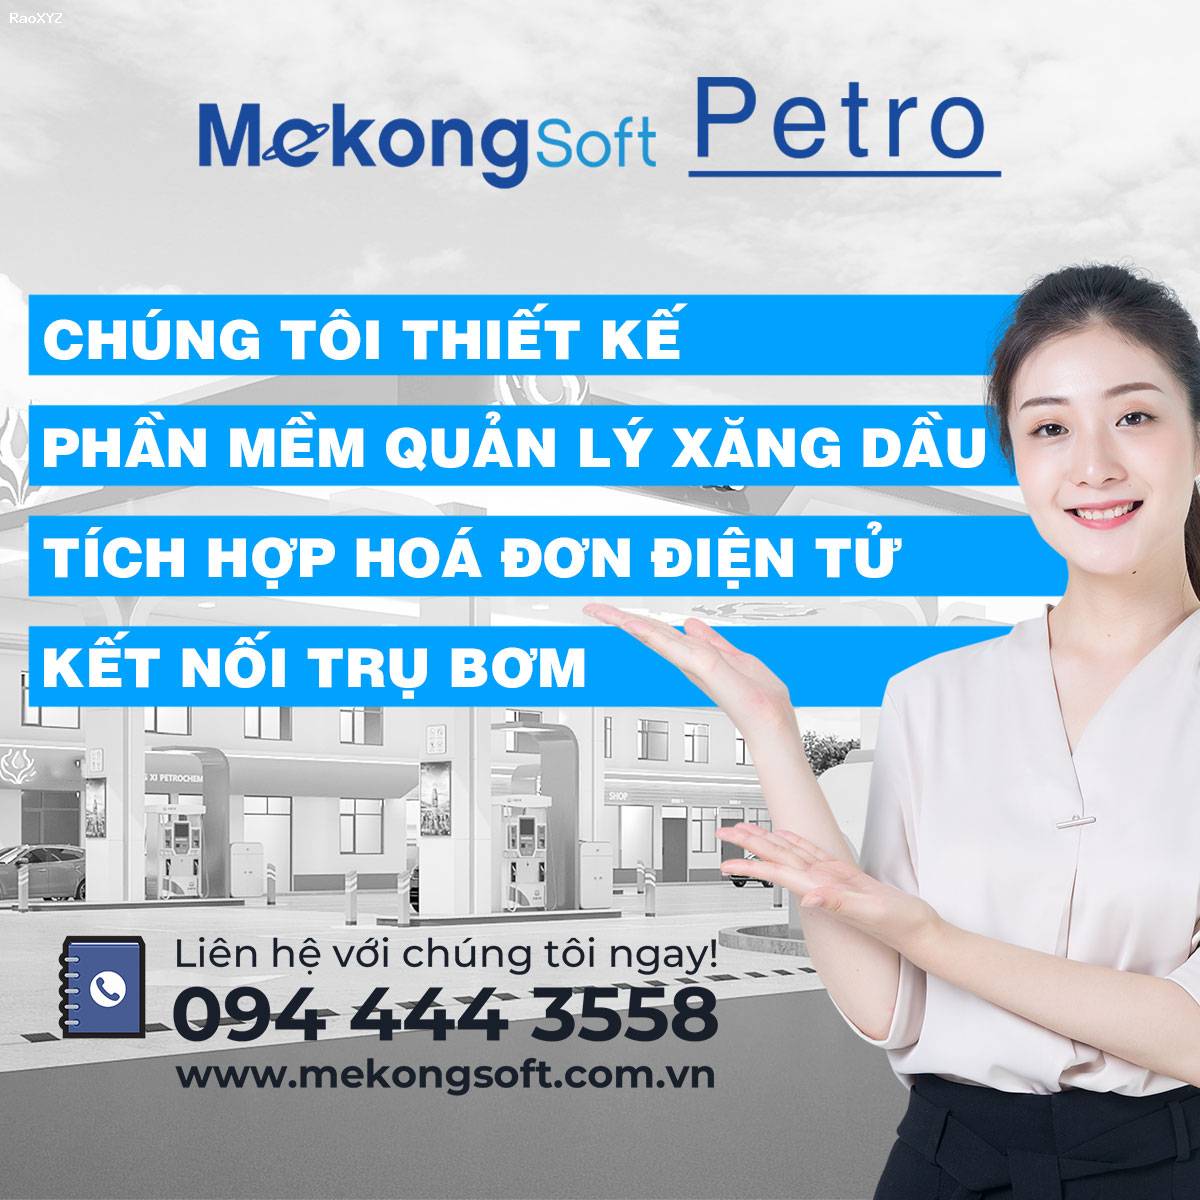 Phần mềm quản lý xăng dầu xuất hóa đơn tự động MekongSoft Petro 0302C